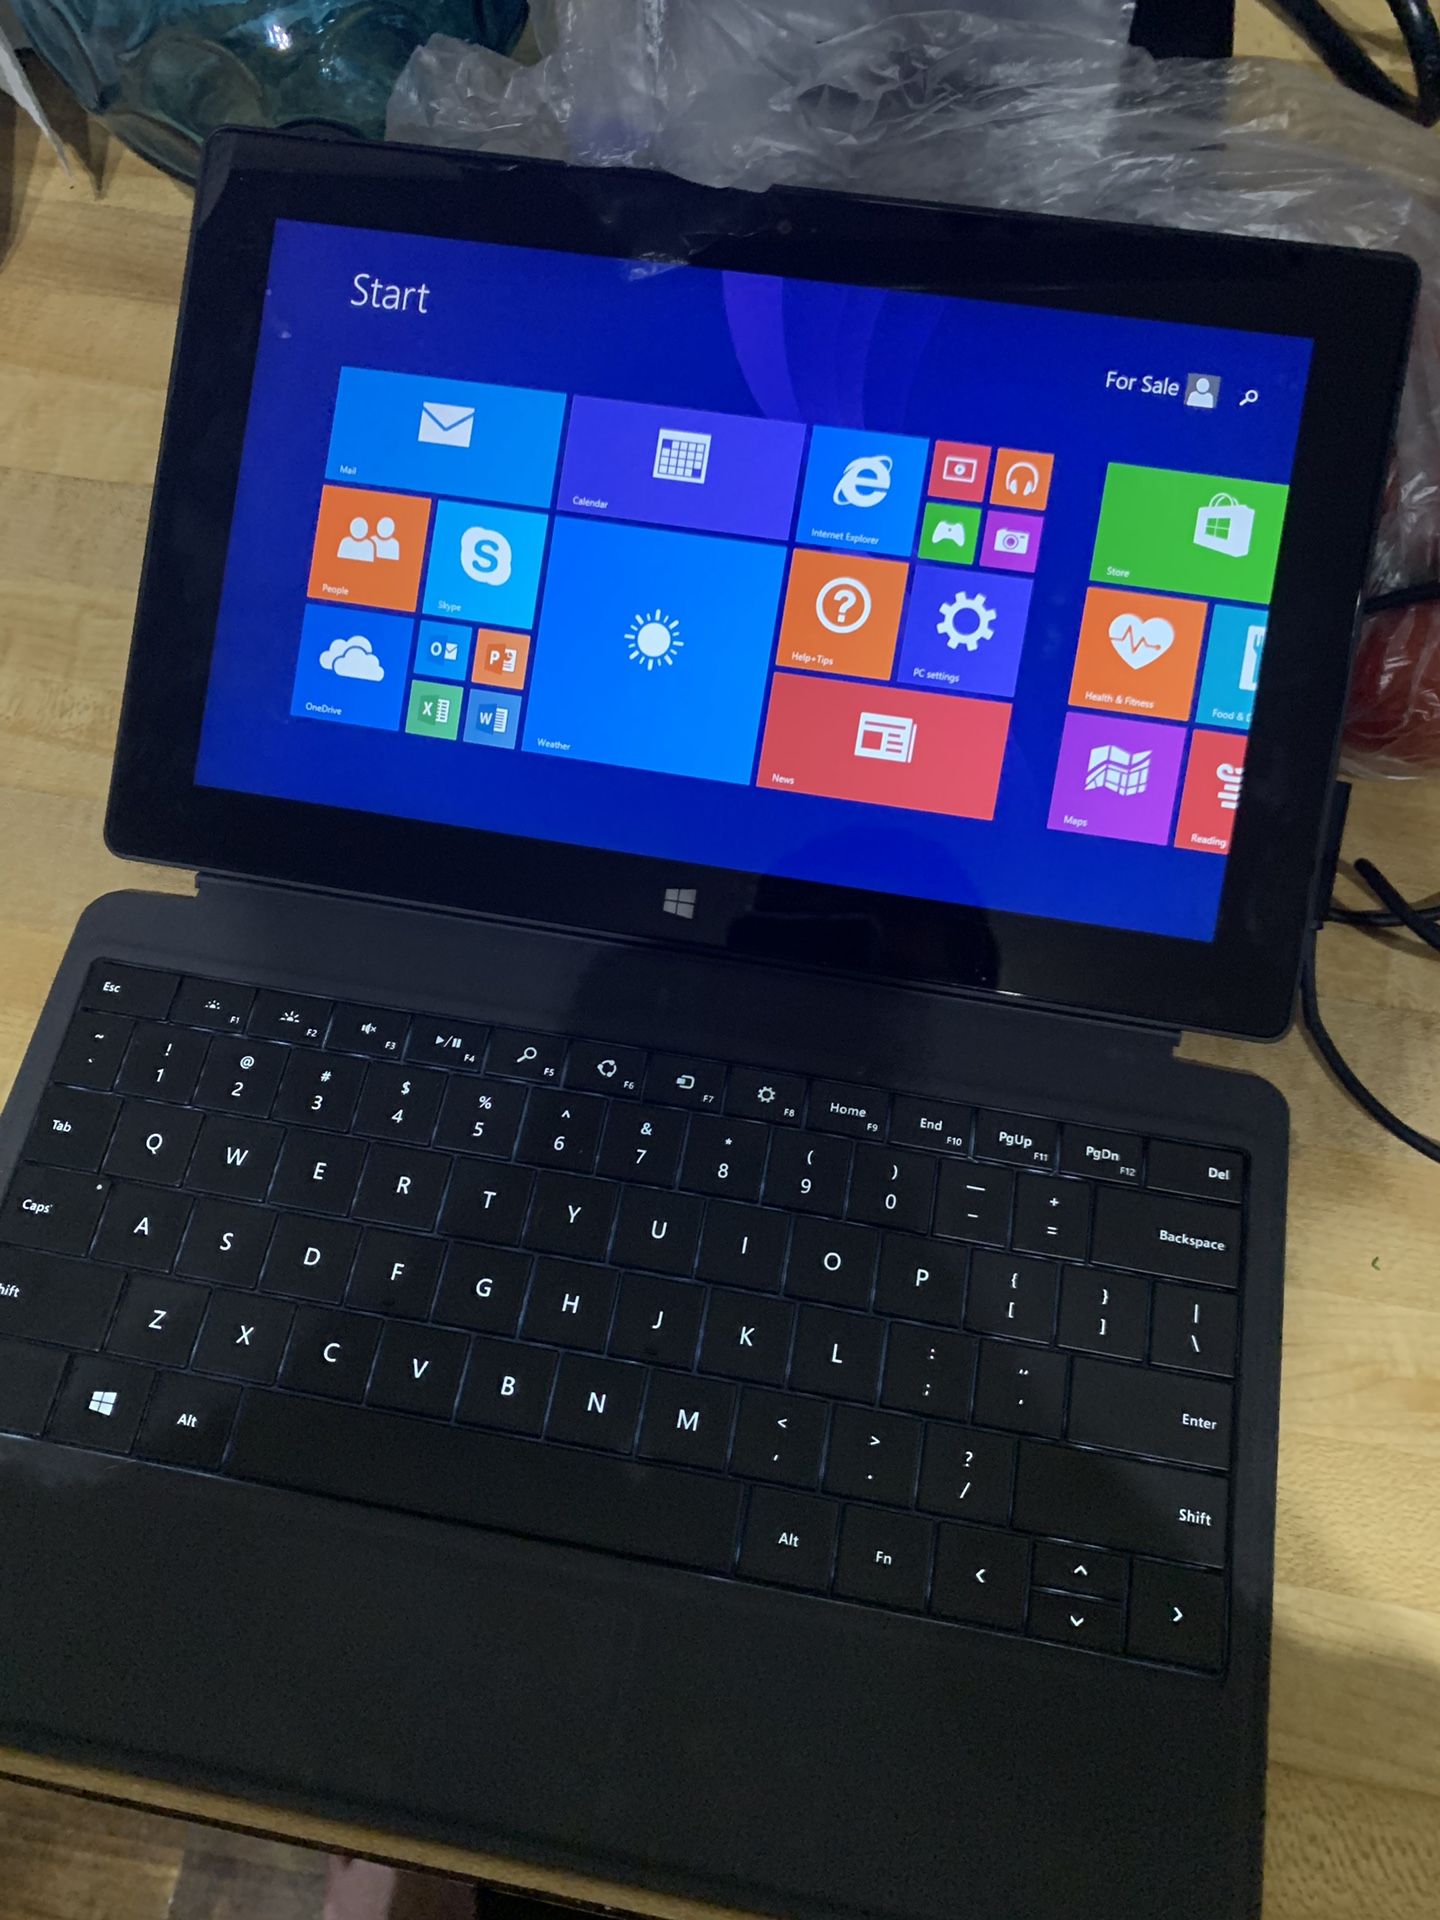 Microsoft Surface RT 8.1